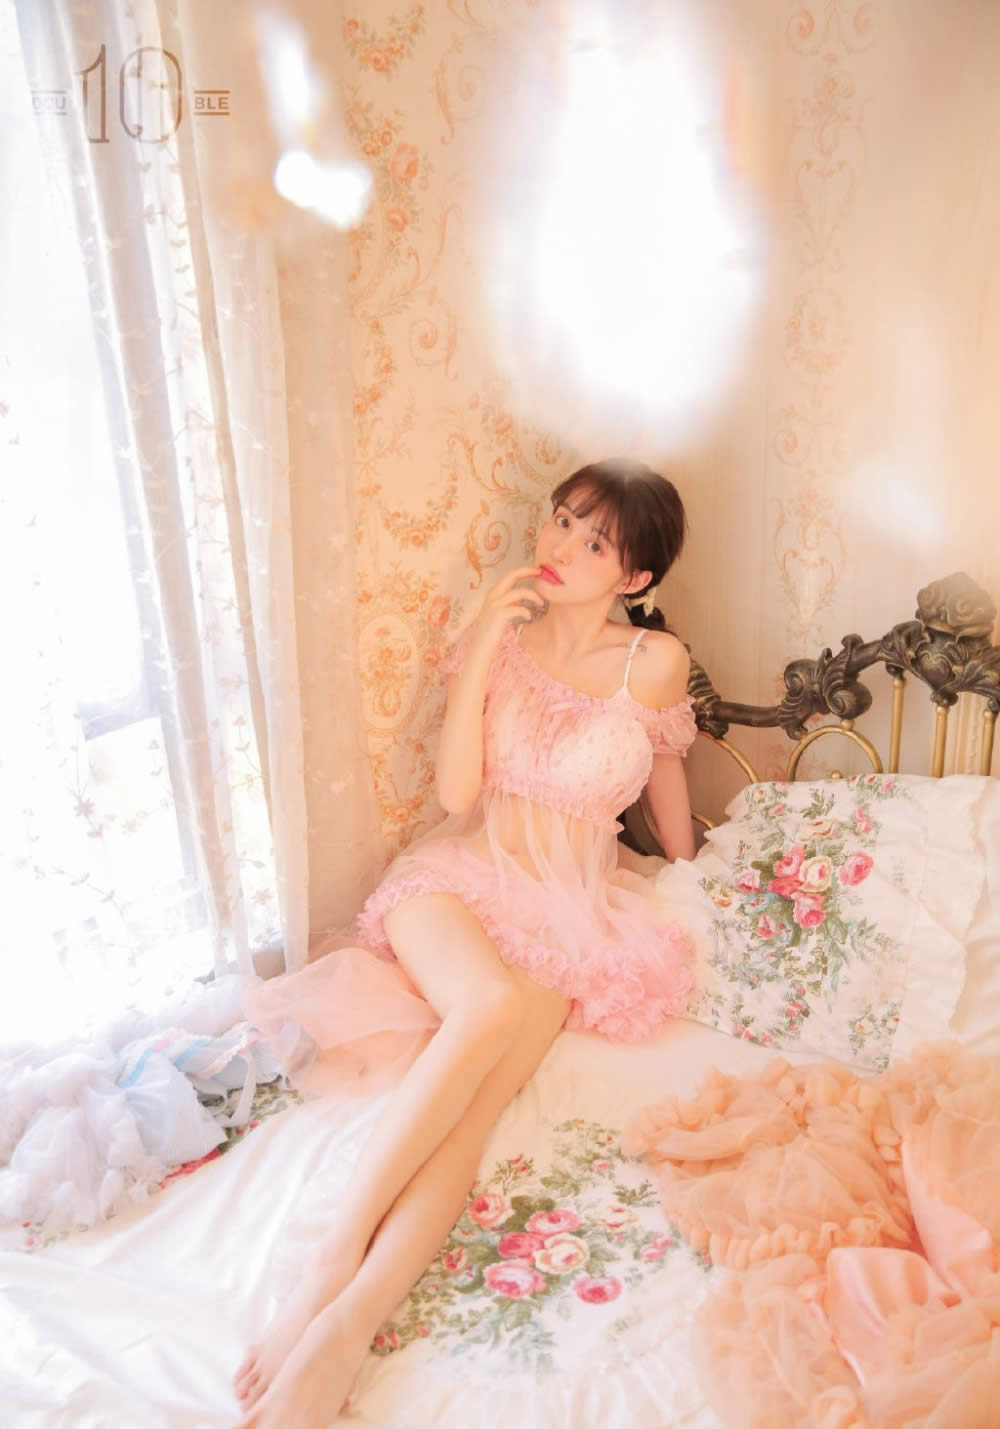 粉红蕾丝内衣萝莉美女床上大胆极品透视引诱写真